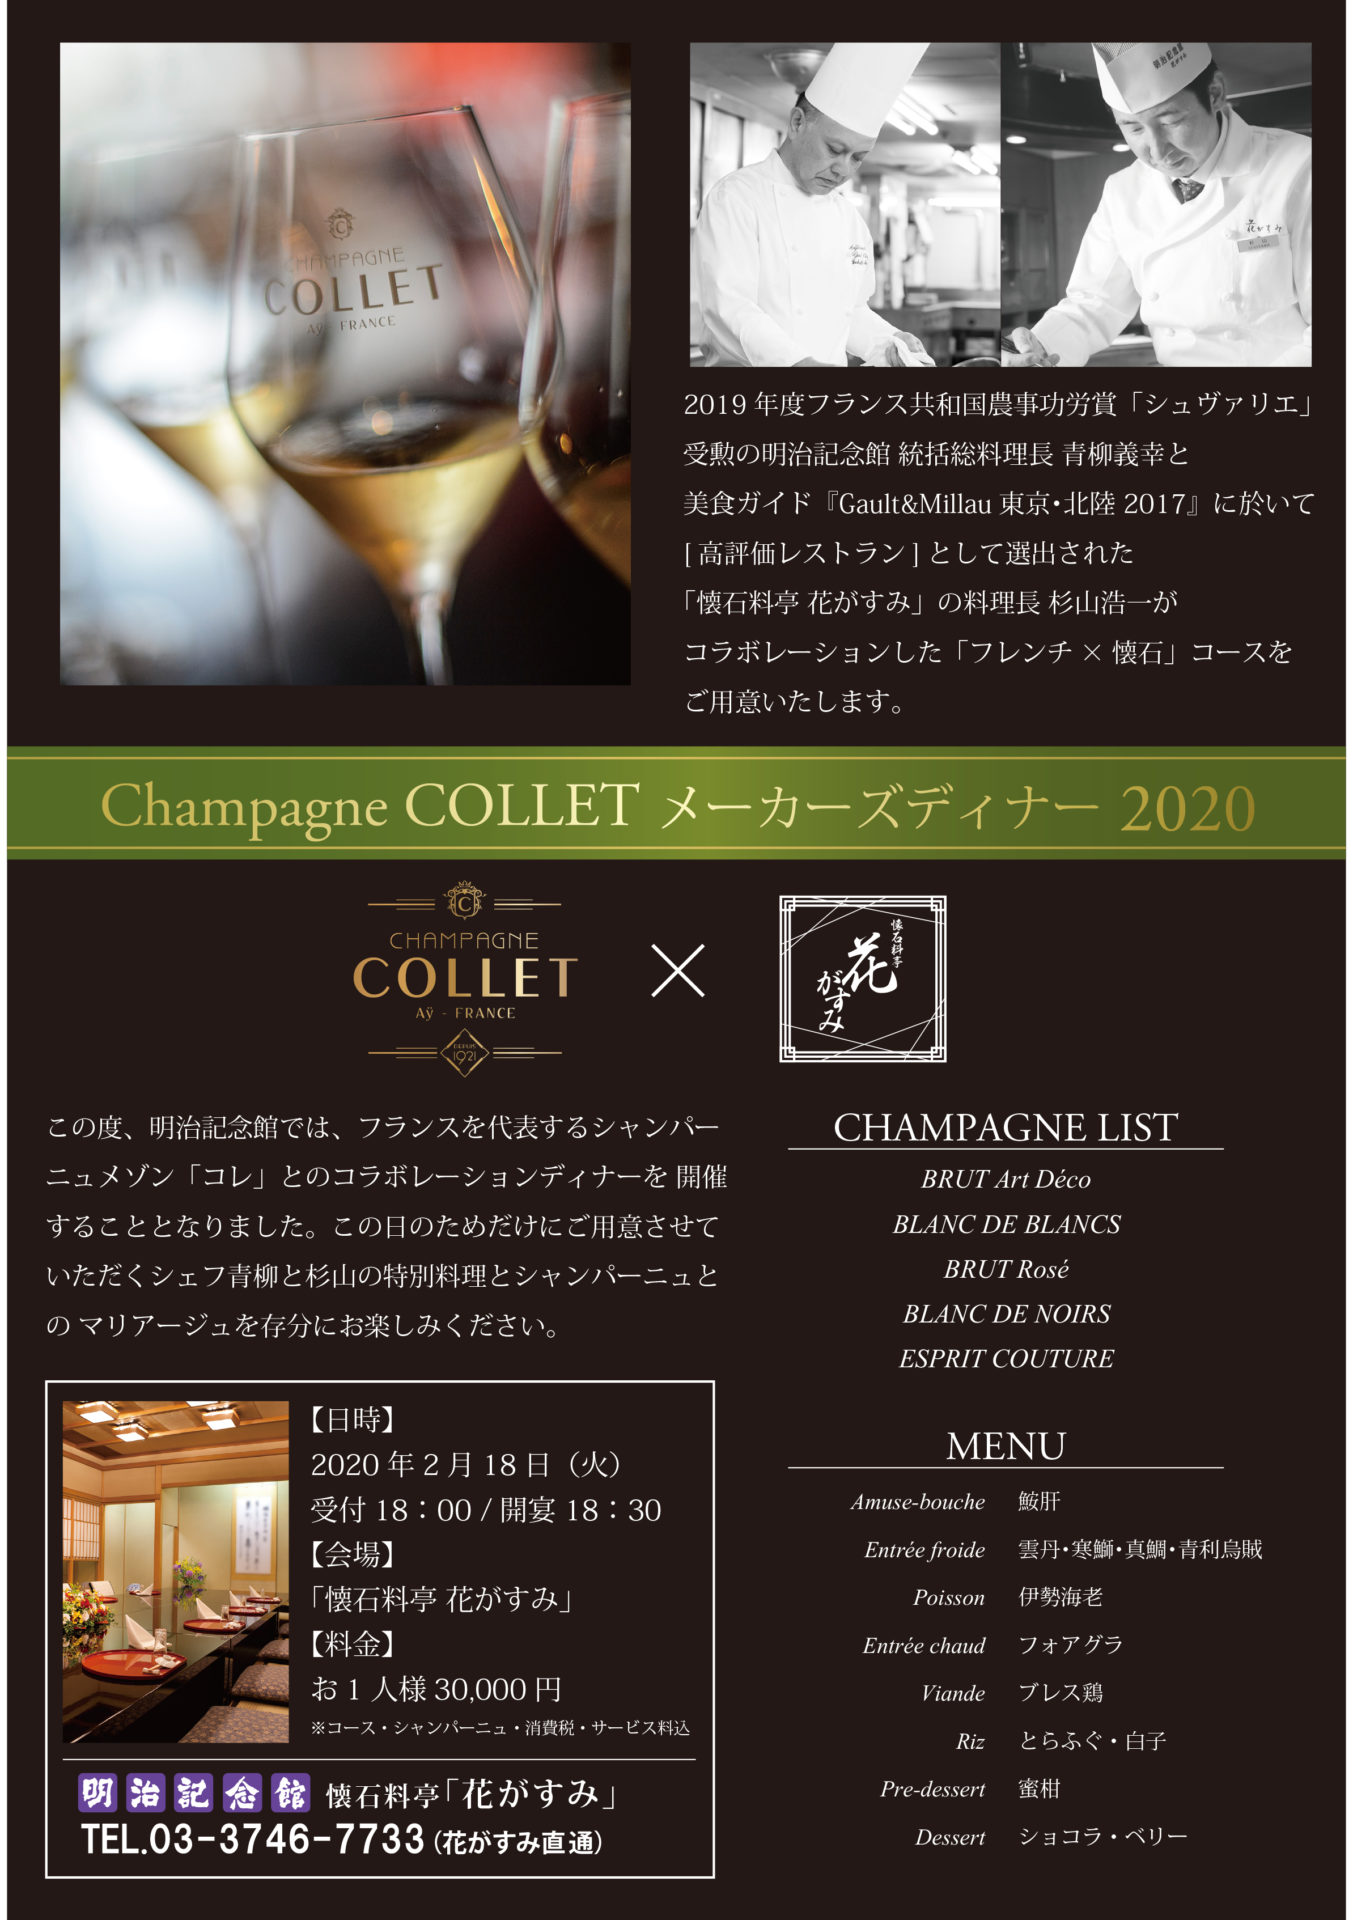 ディナーイベント 明治記念館 花がすみ Champagne Colletメーカーズディナー Champagne Collet シャンパーニュ コレ 日本サイト